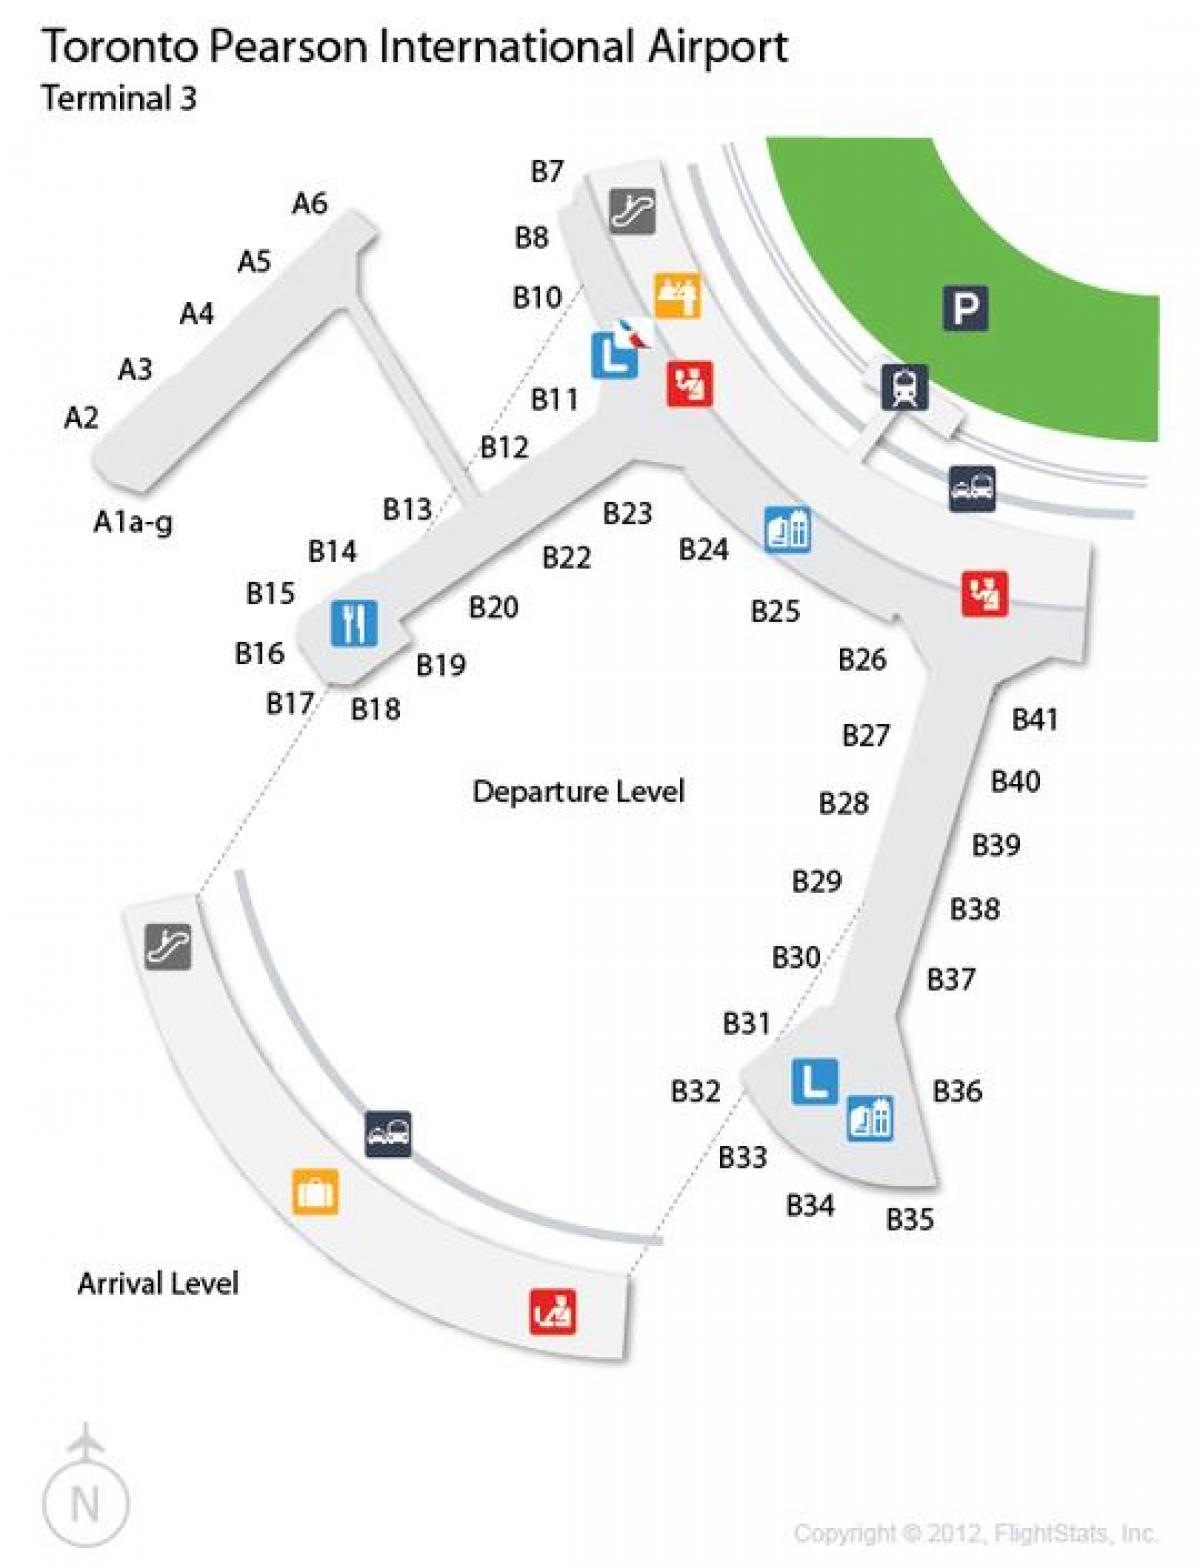 Zemljevid Torontu Pearson letališču prihoda ravni terminal 3